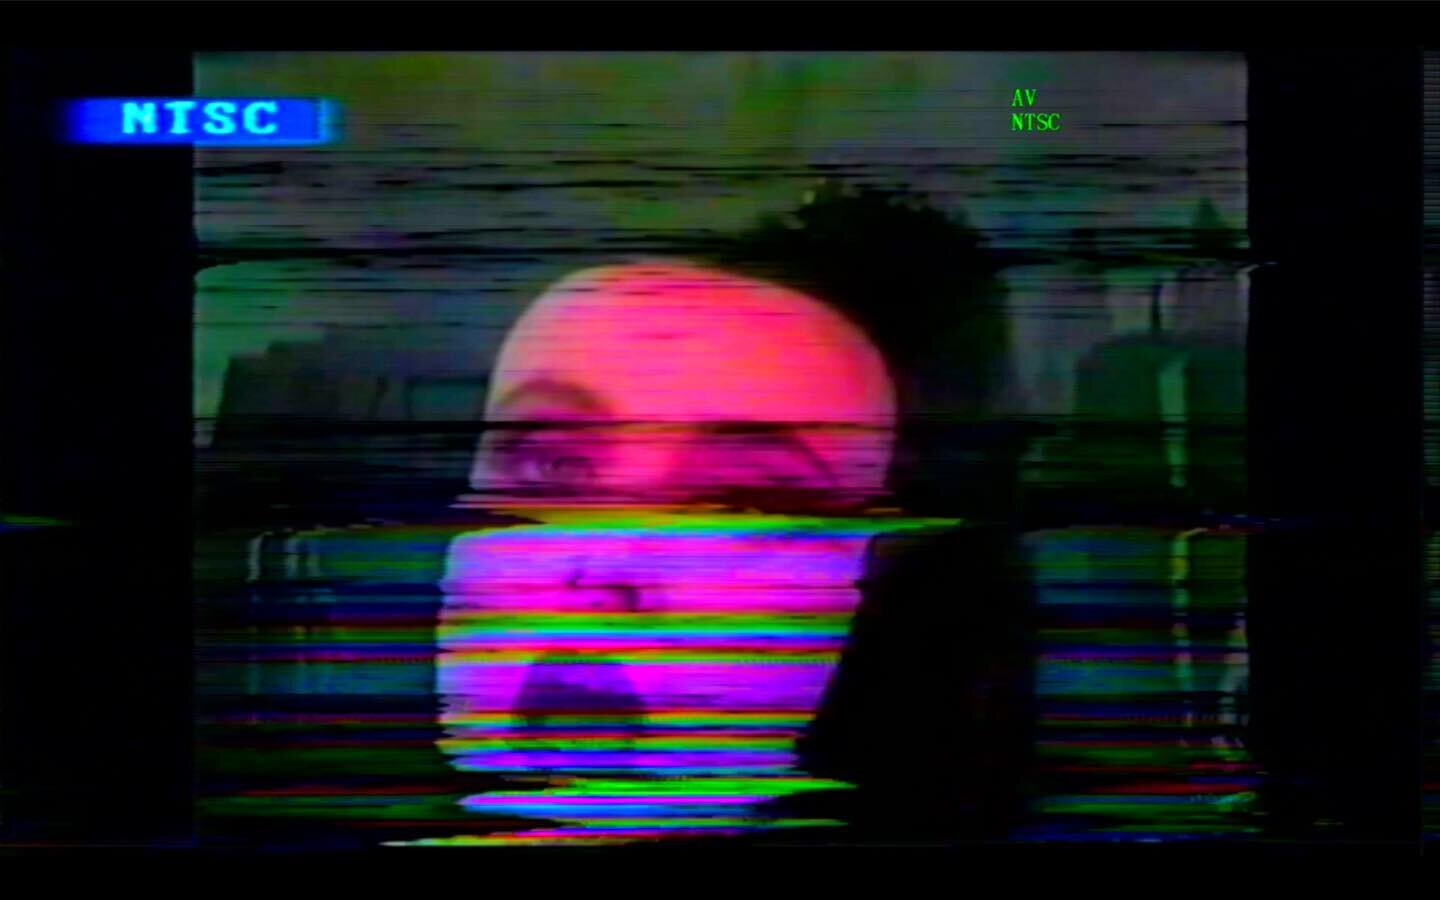 Stills from my most recent video for @slcnashville 

#analogvideoart #videoglitch #videoart #glitchart #sheslostcontrolnashville